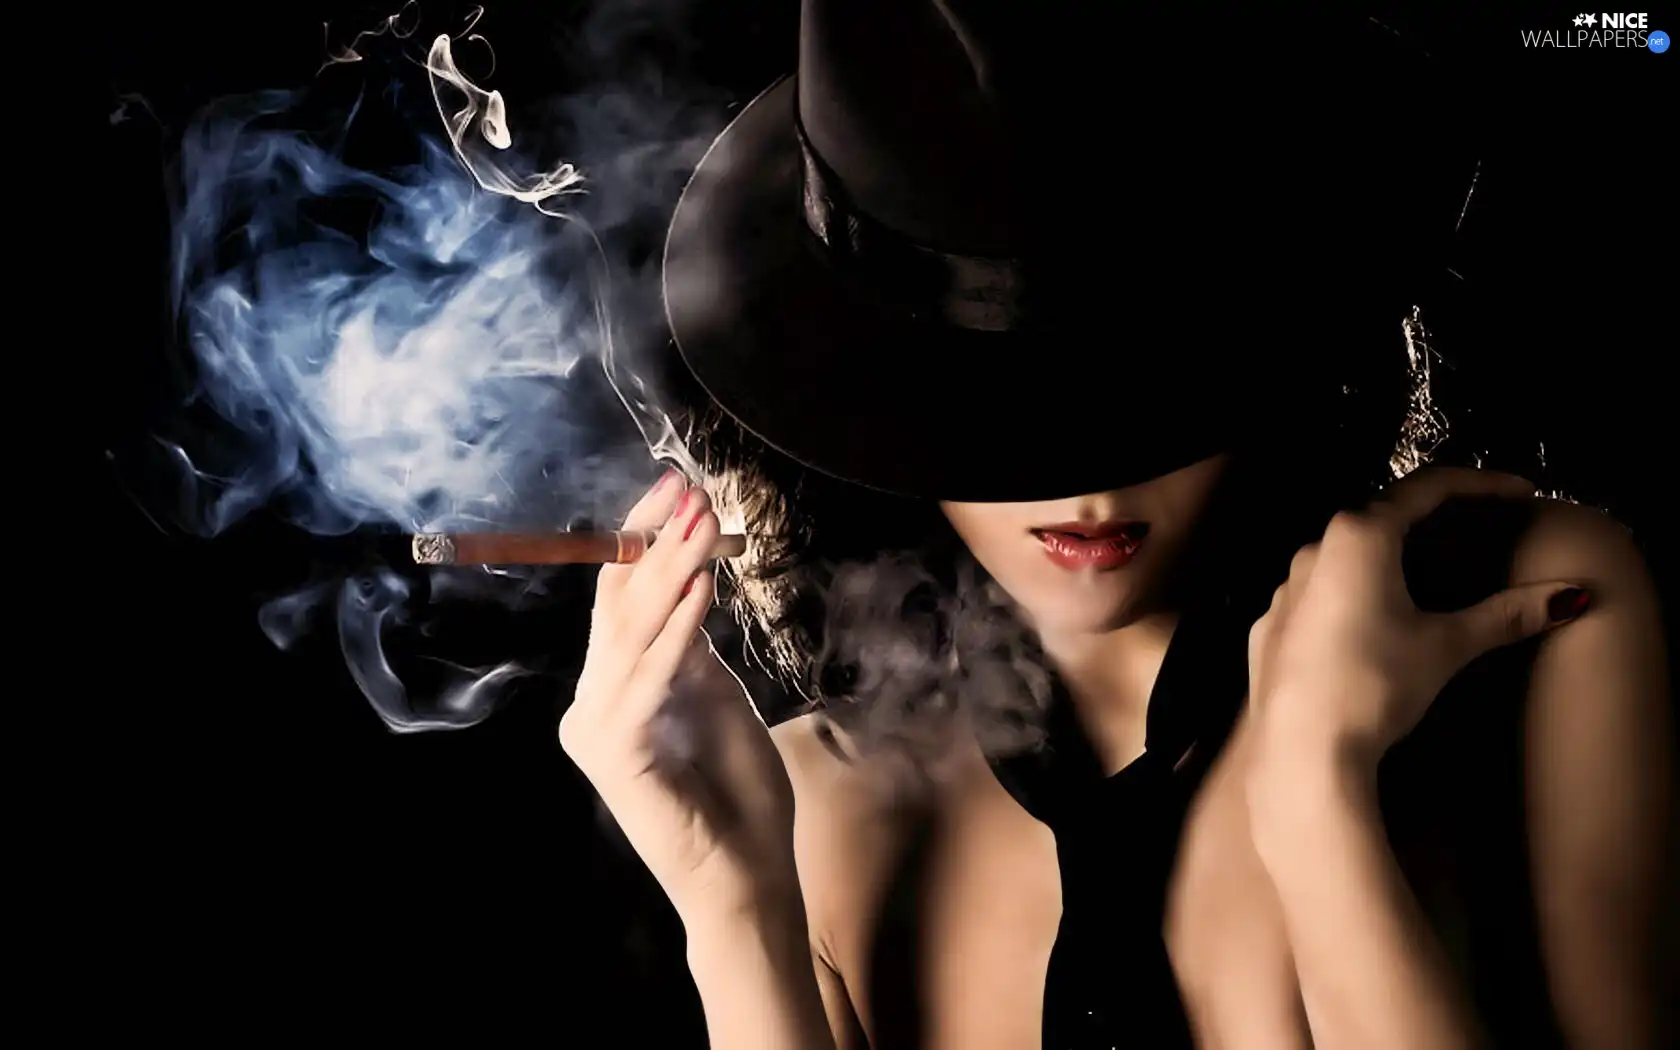 Hat, Women, cigar